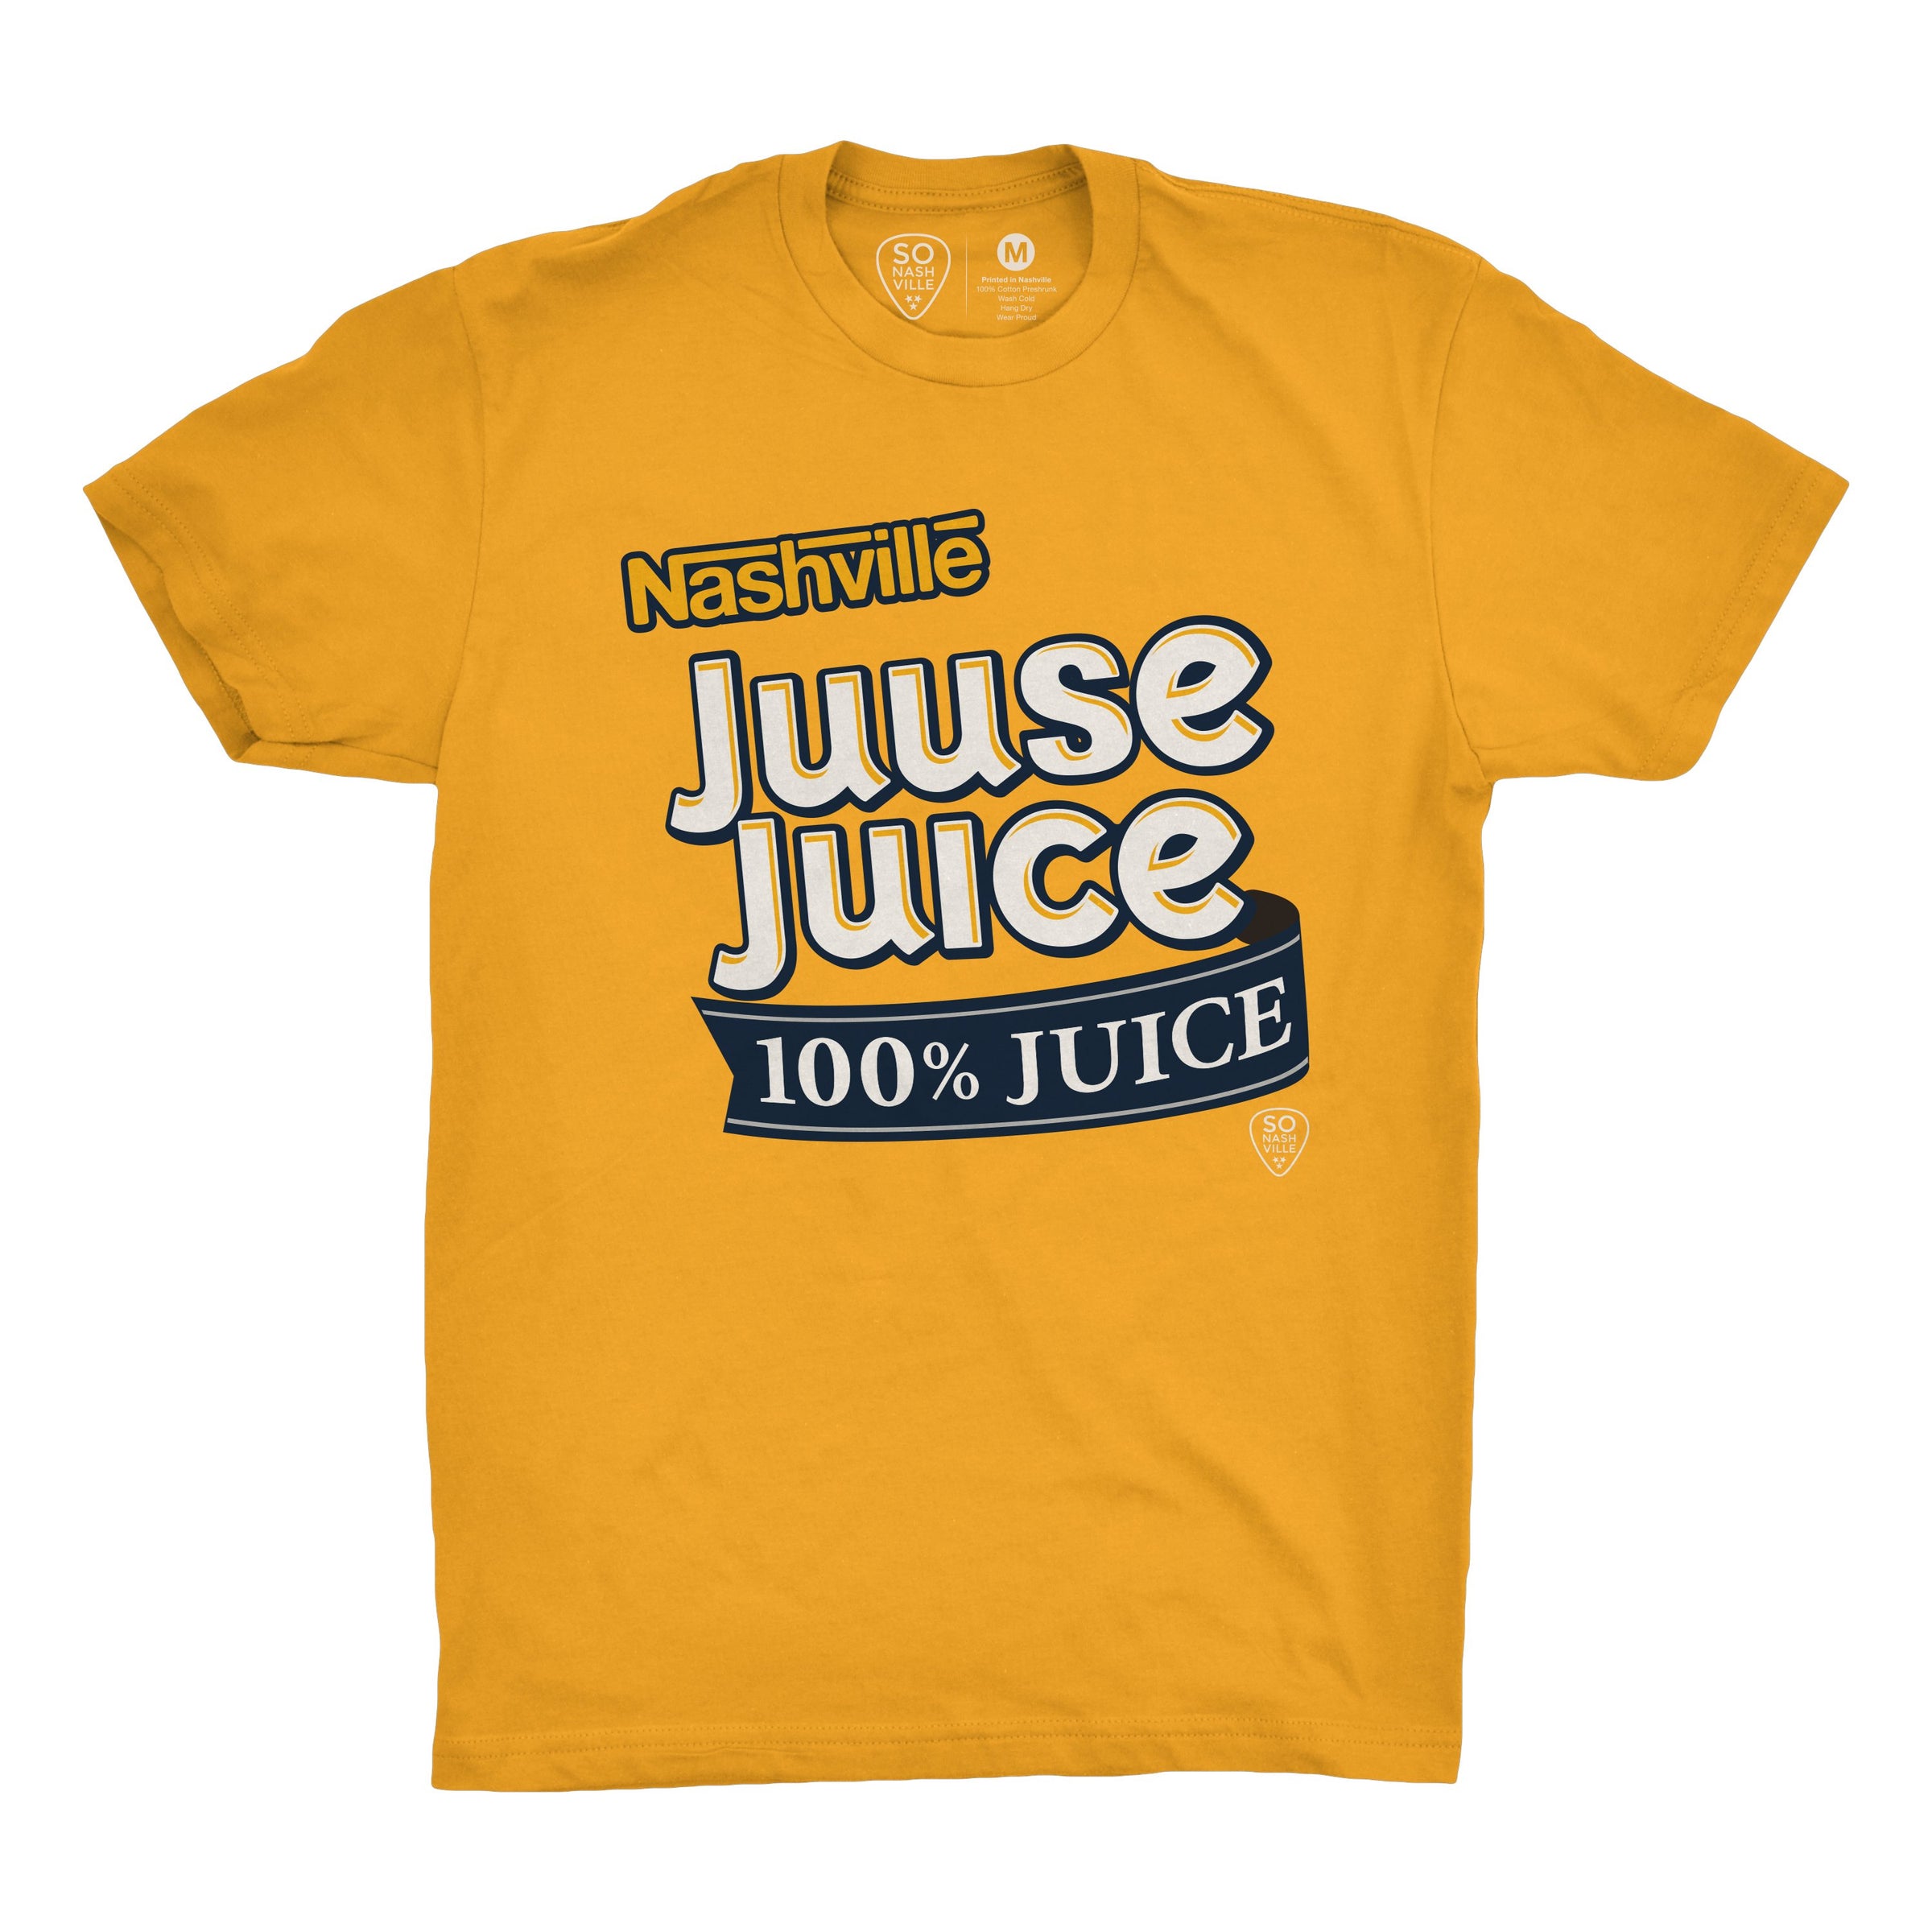 Juuse Juice - So Nashville Clothing